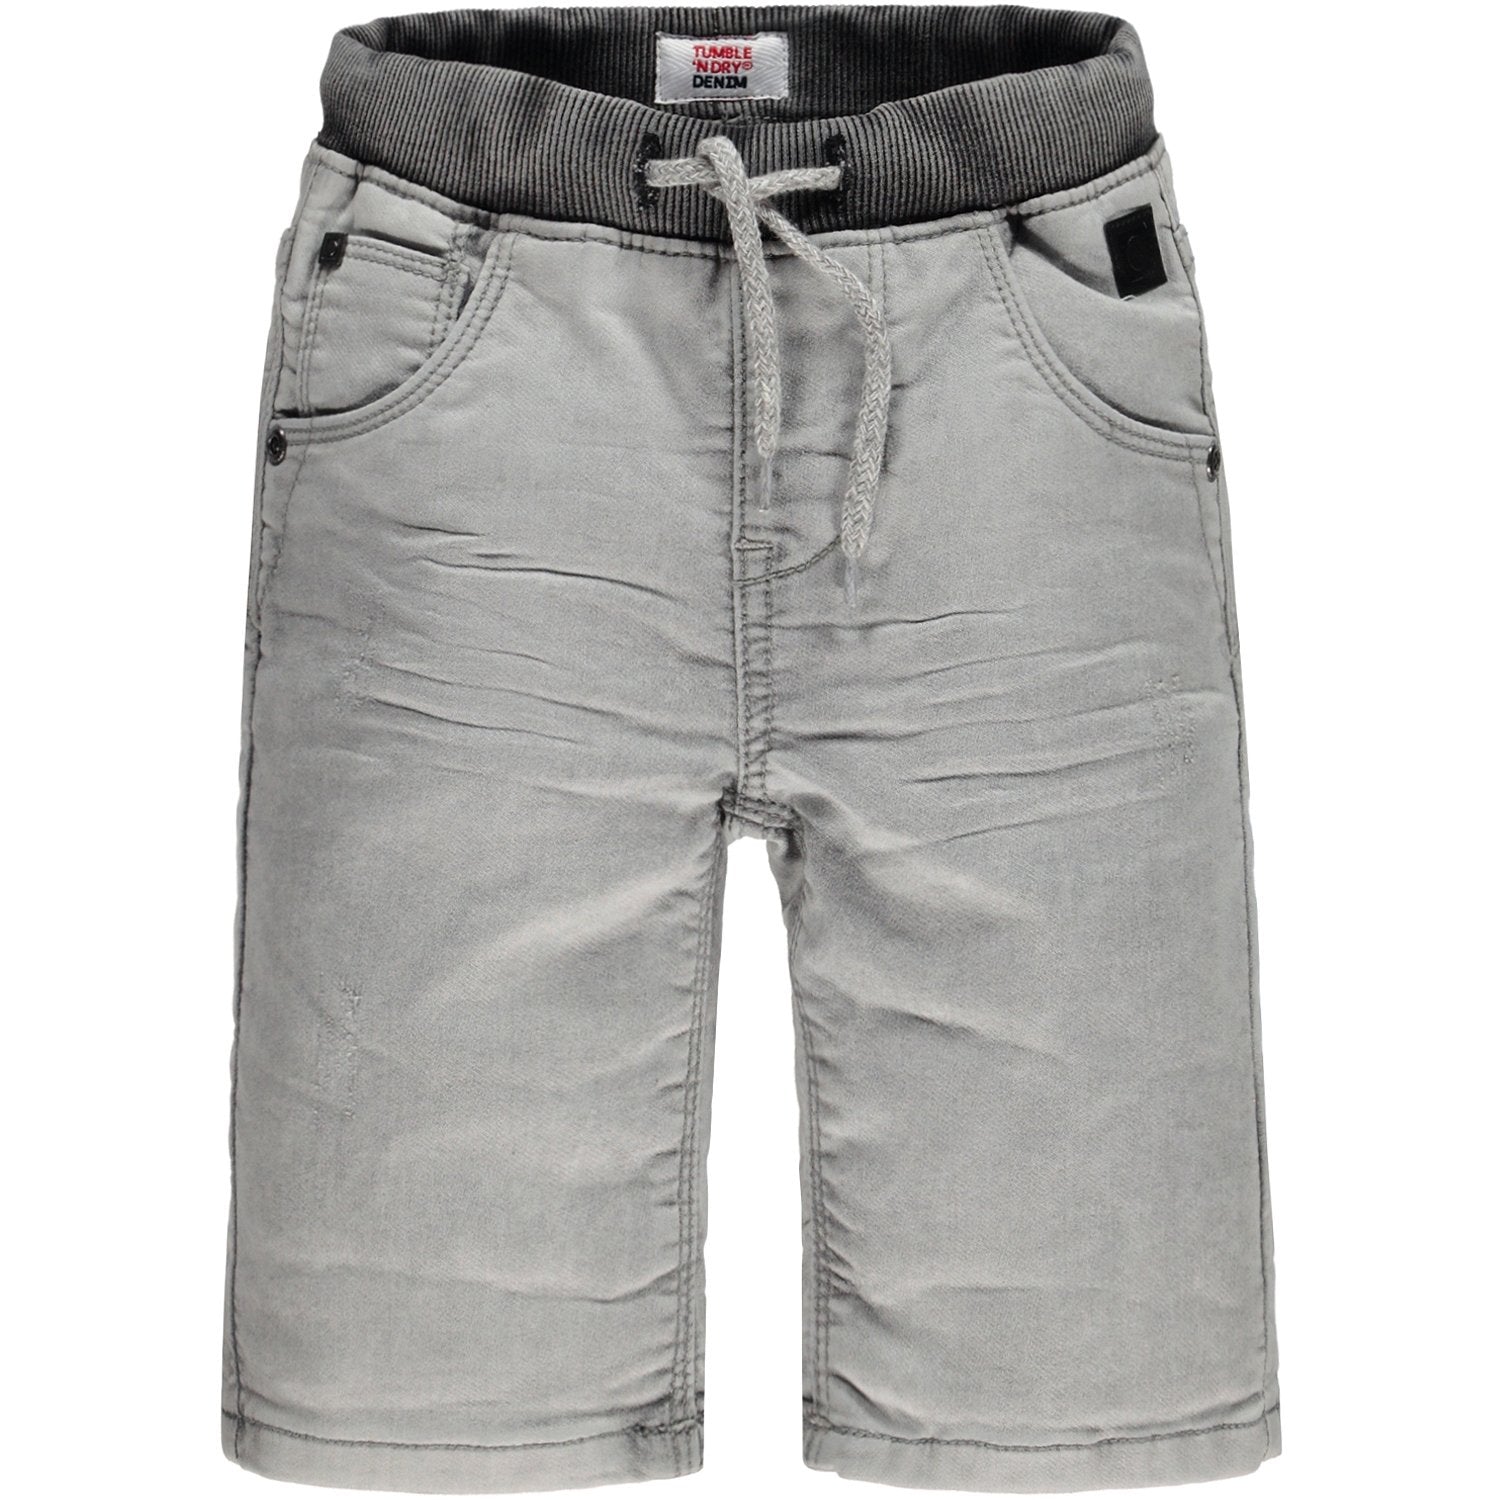 Jongens Broek Jeans kort van Tumble 'n Dry in de kleur Denim grey in maat 128.